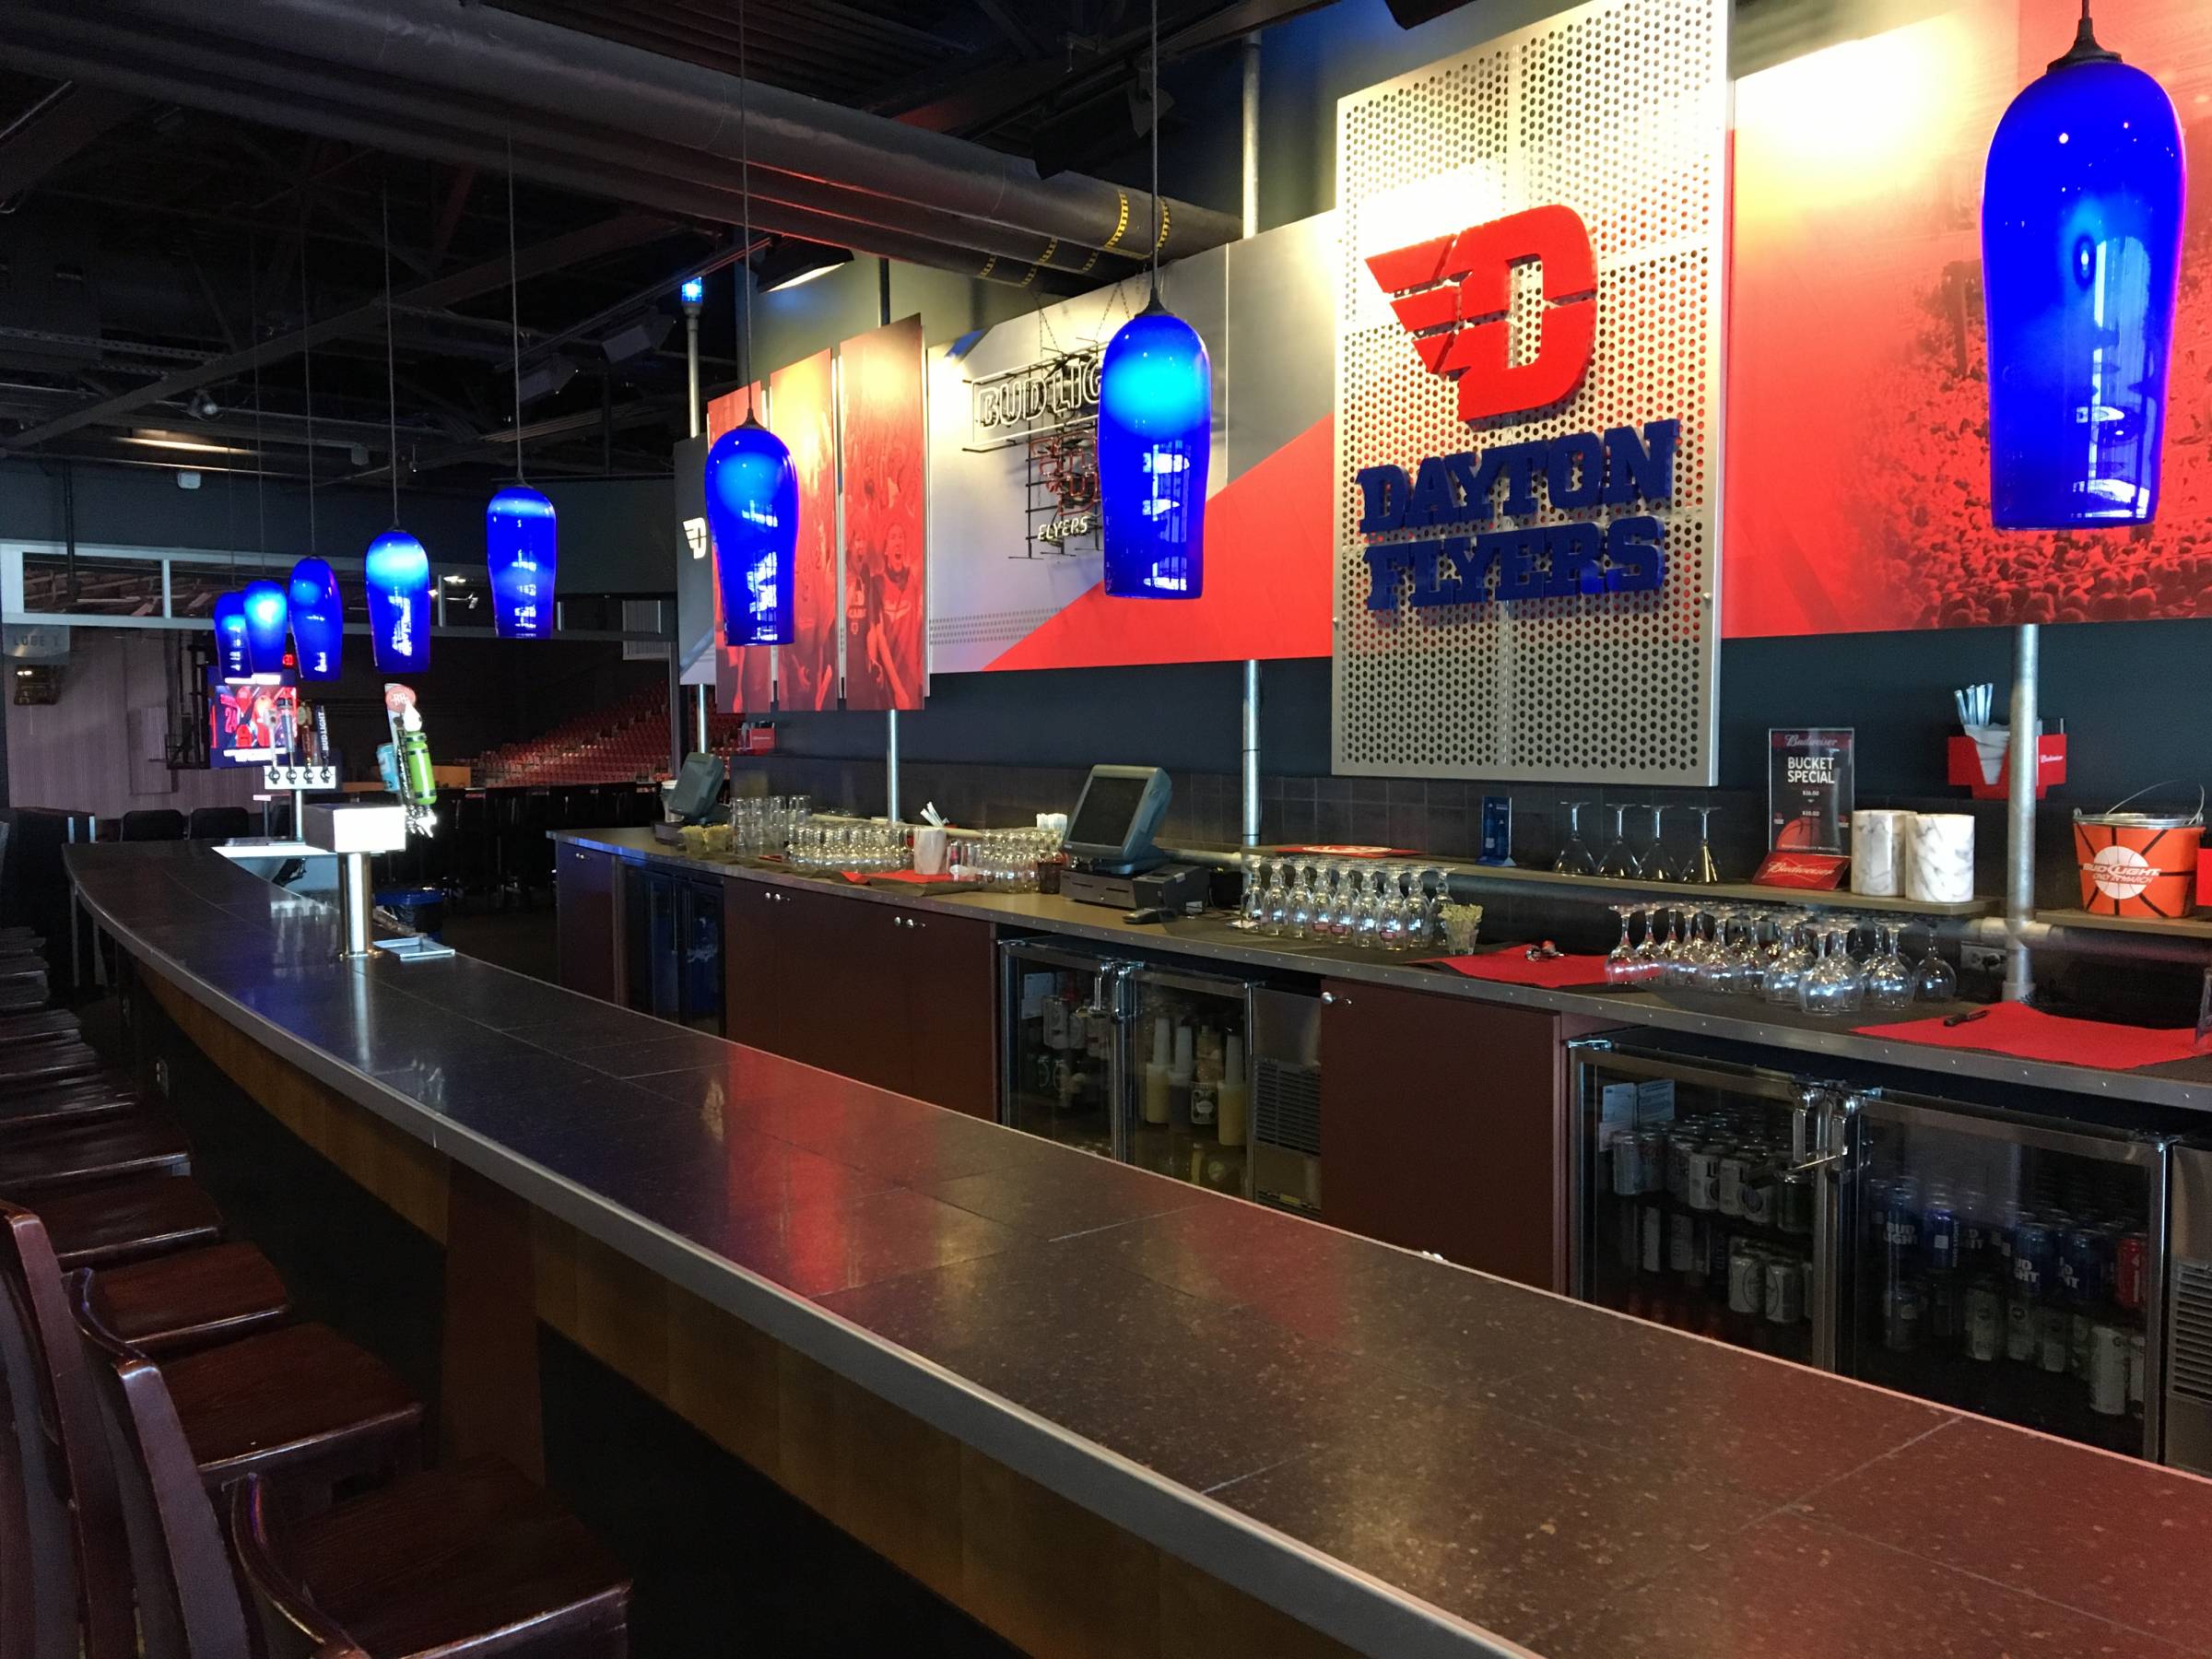 Flight Deck Bar at UD Arena